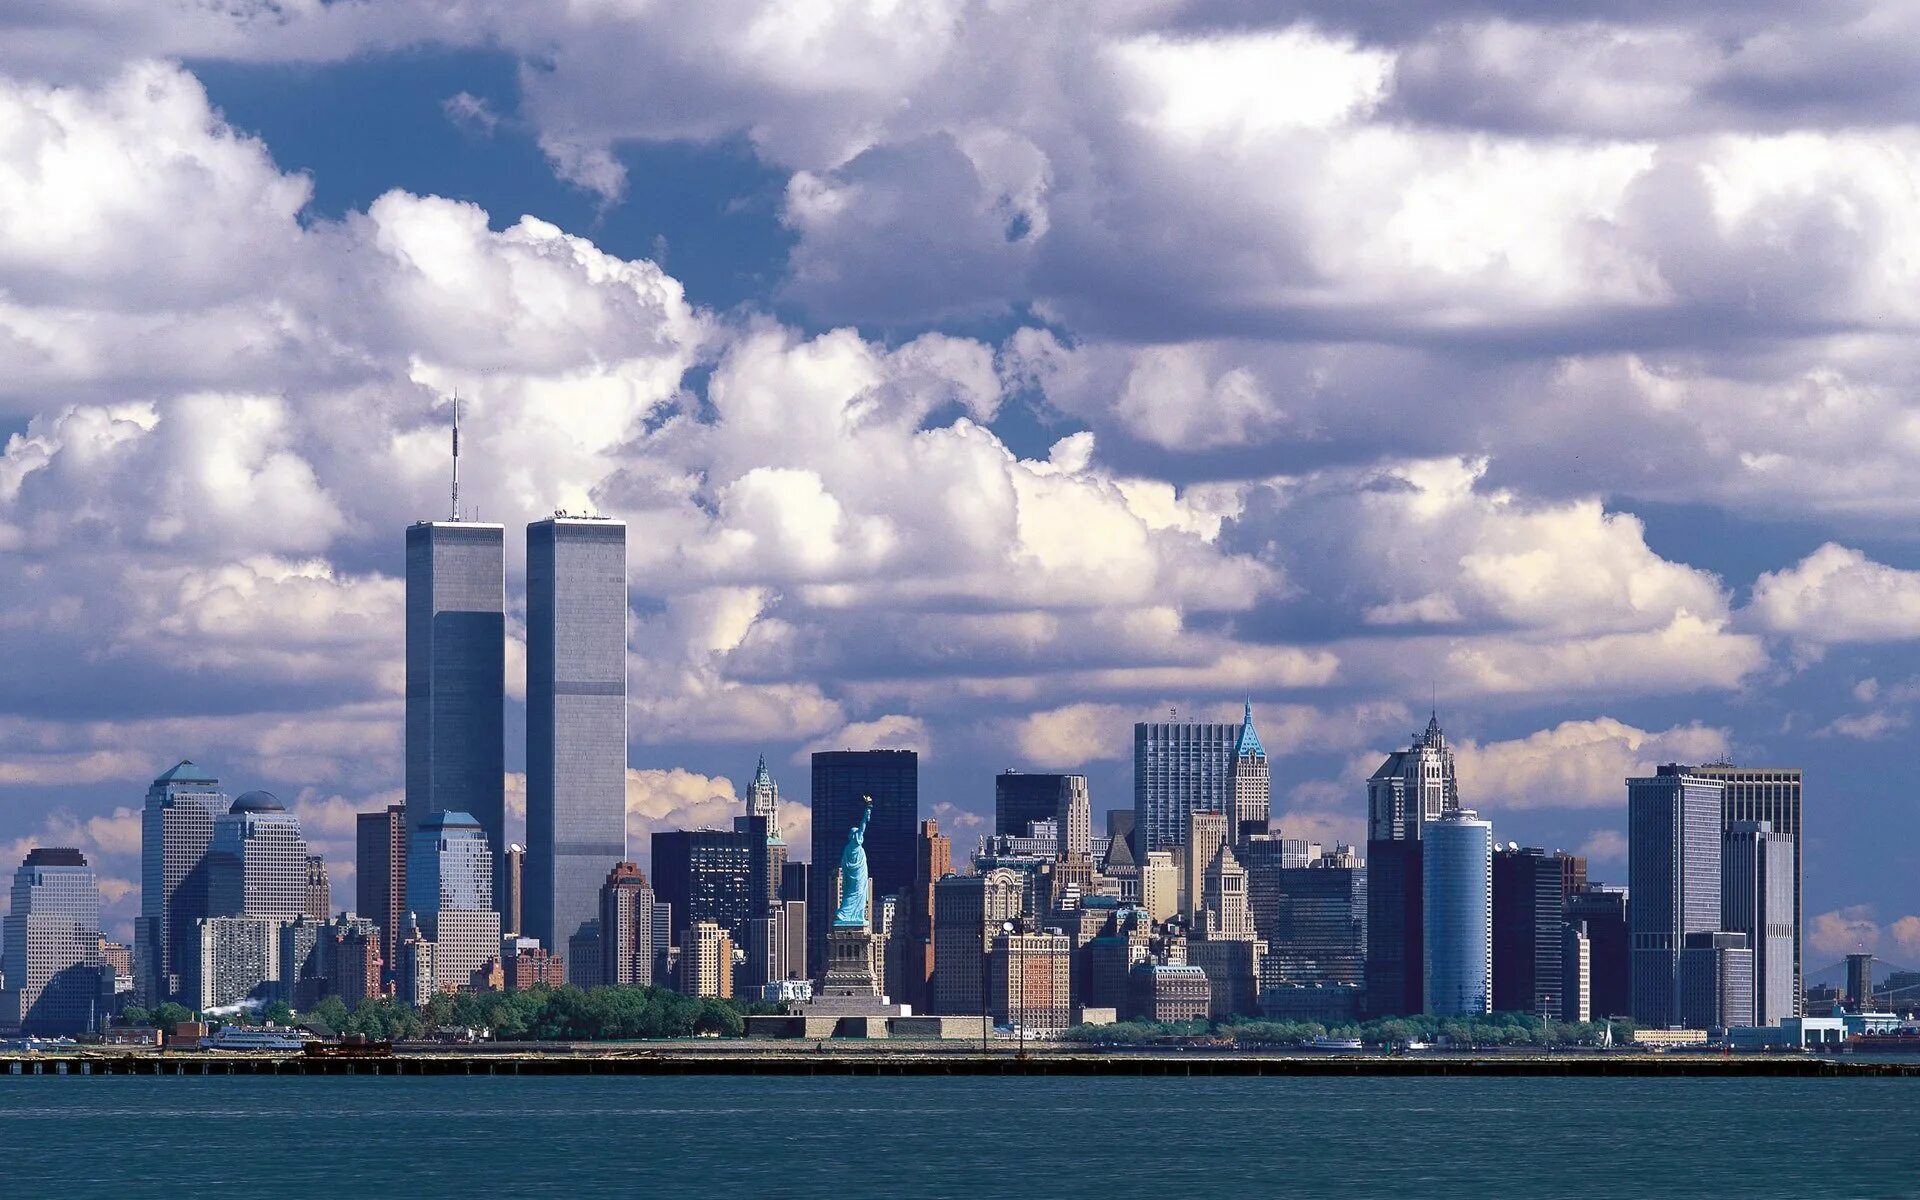 Остров небоскребов. Башни Близнецы в Нью-Йорке. Манхэттен башни Близнецы. Башня свободы в Нью-Йорке. Америка Нью-Йорк Манхэттен.